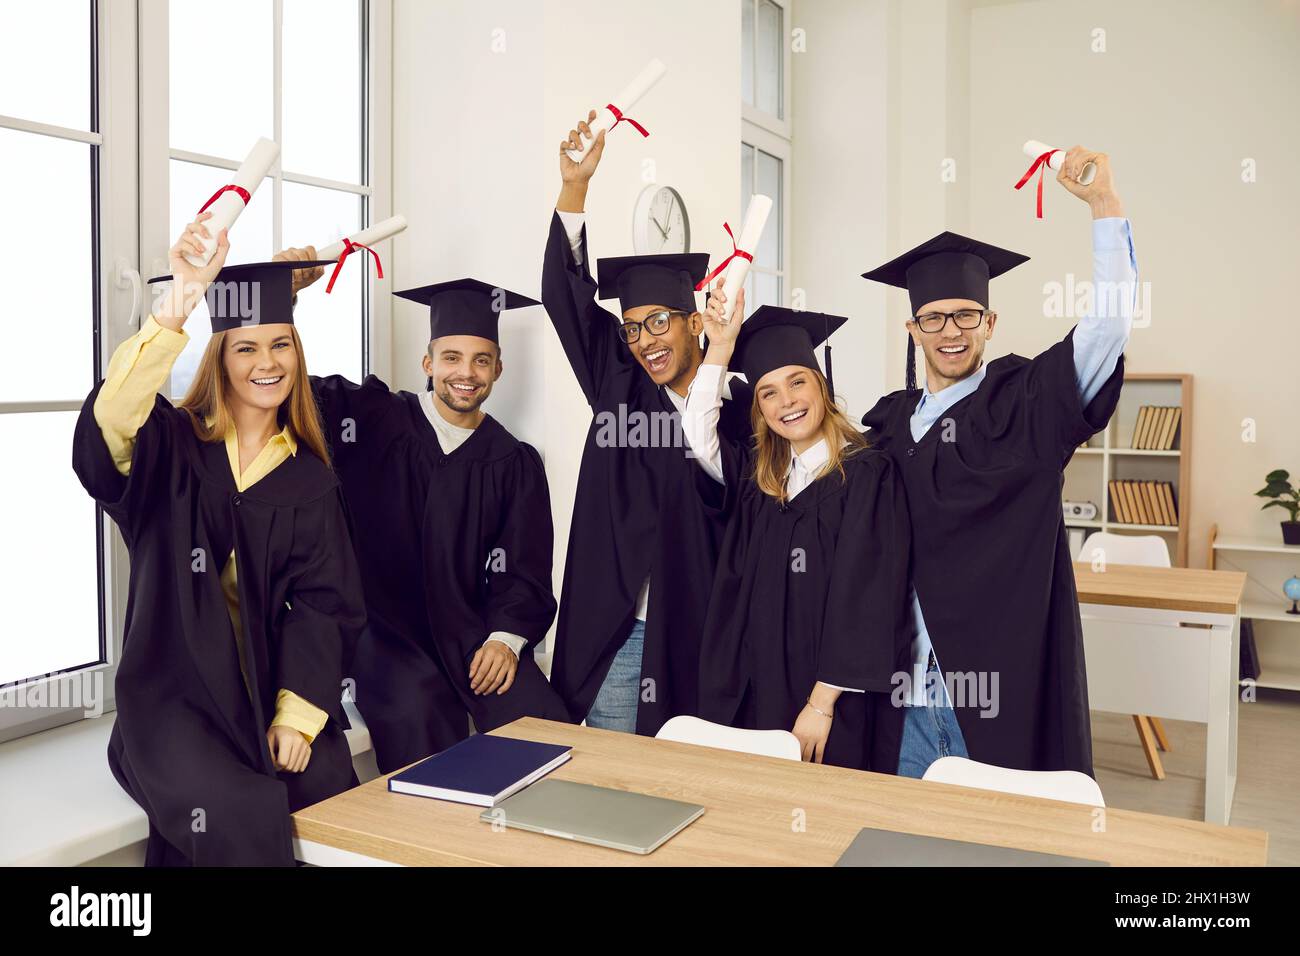 Gruppo di studenti universitari o universitari felici e diversi che tengono in mano i diplomi e sorridenti Foto Stock